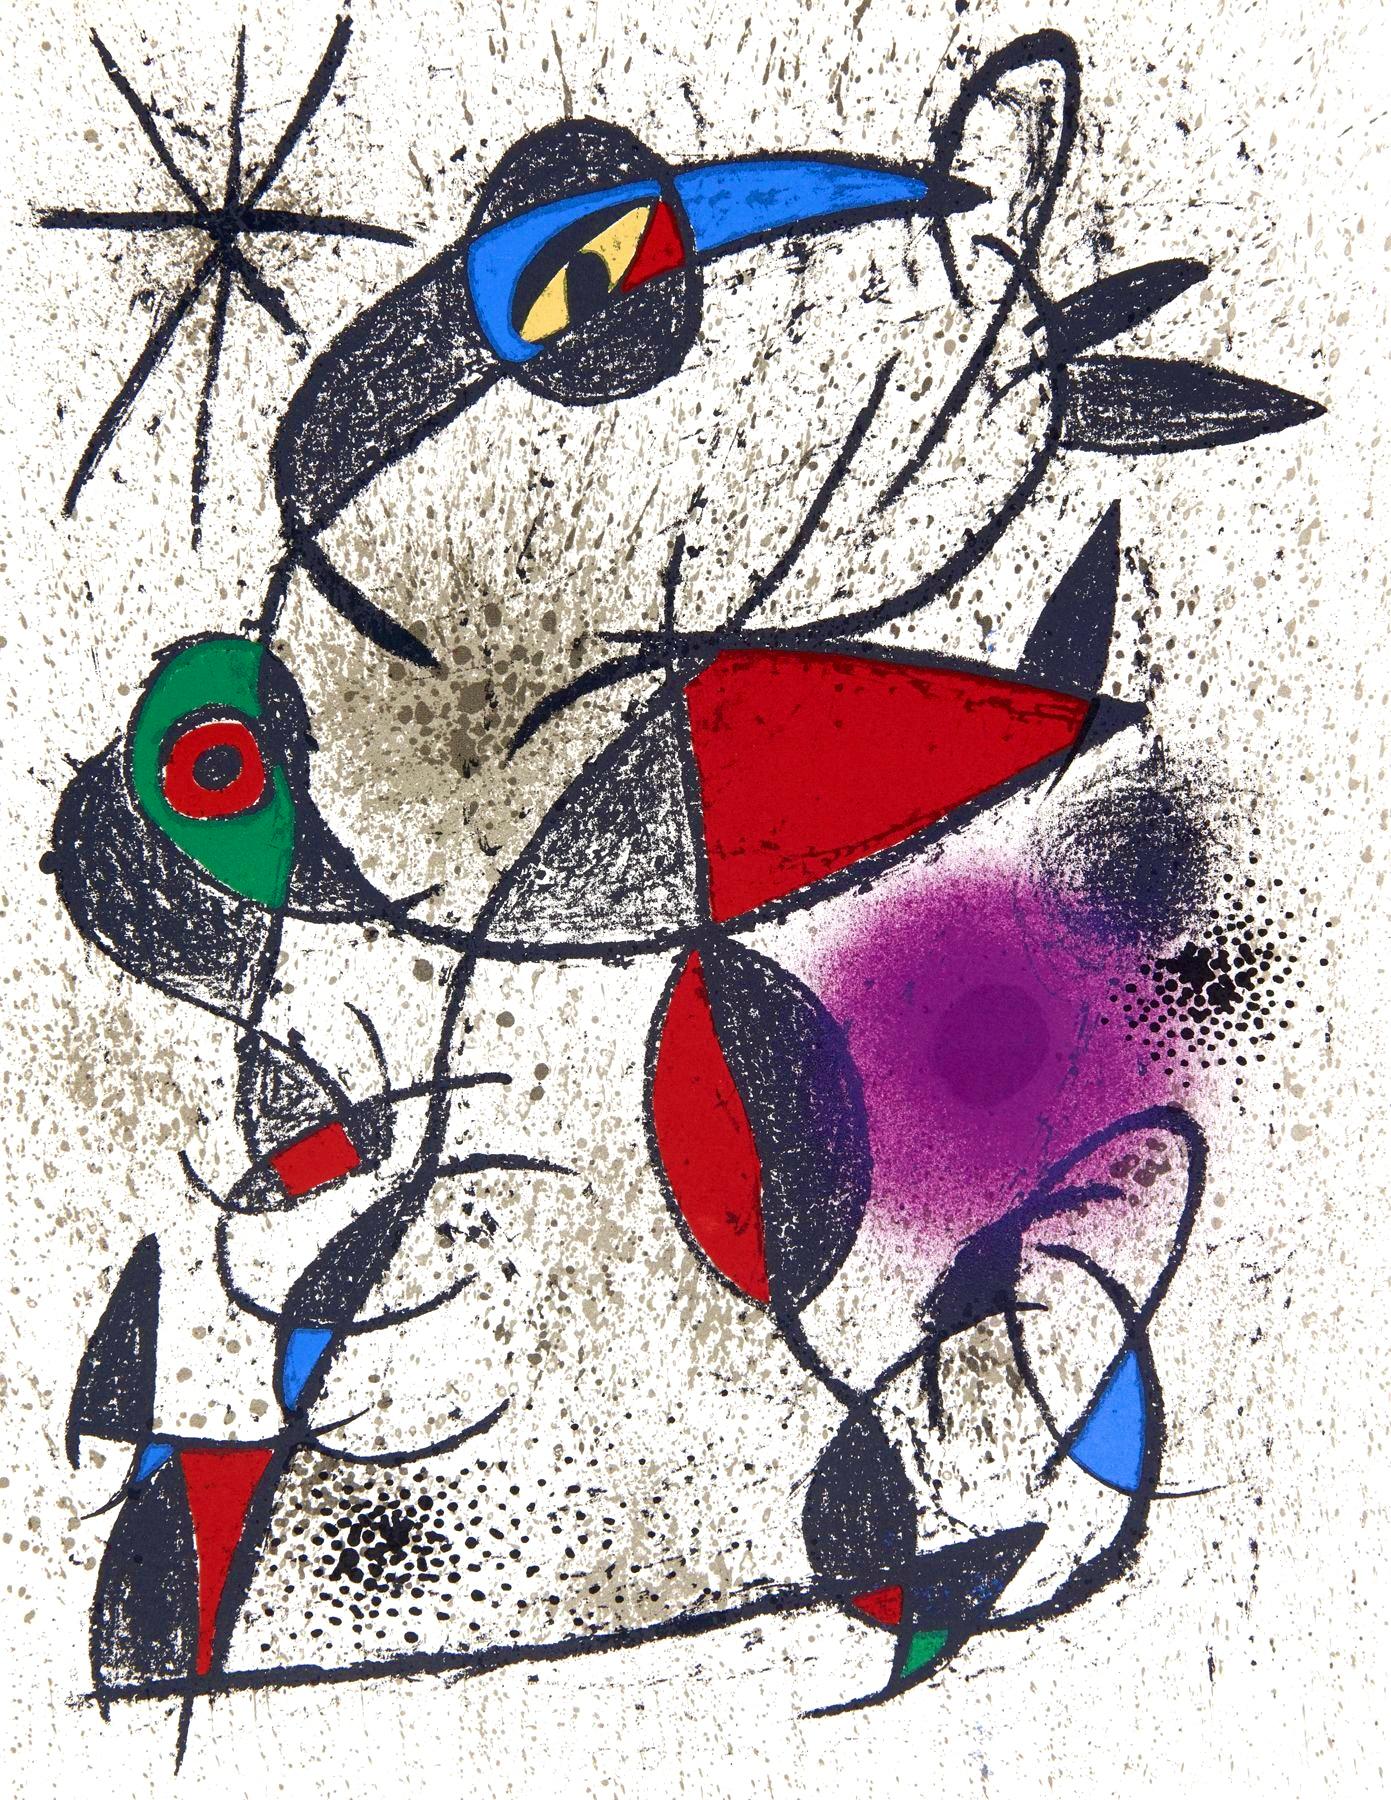 Abstract Print di Joan Miró - Miró, Faillie du calcaire, Souvenirs et portraits d'artistes (dopo)